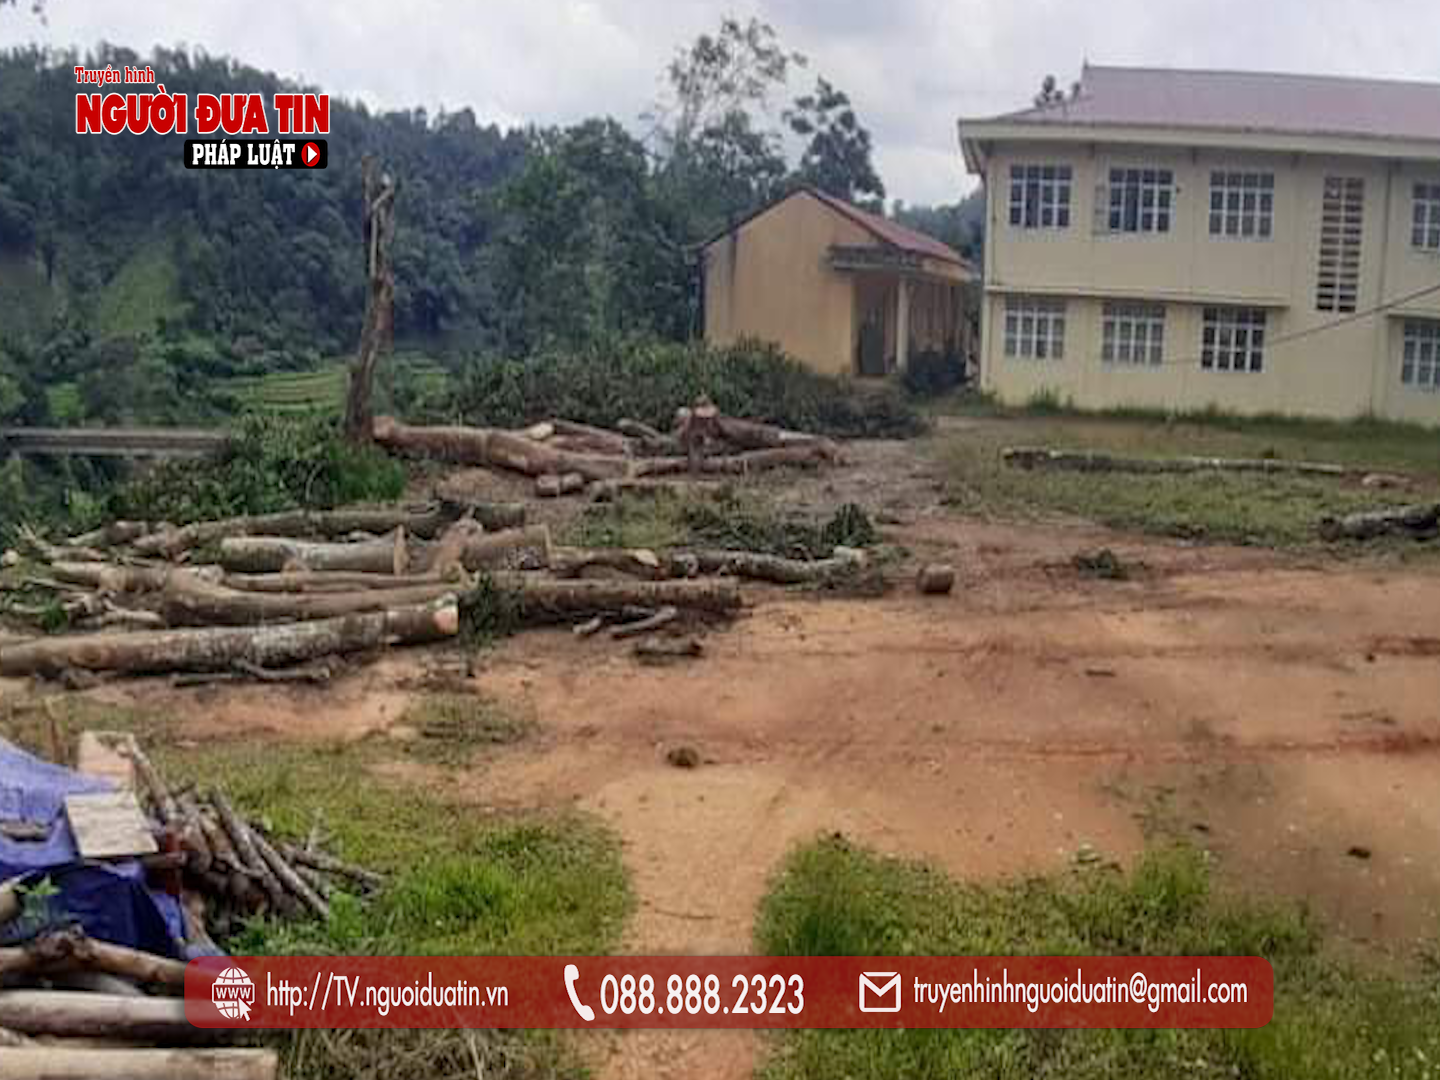 Hàng chục cây gỗ lim trong khuôn viên nhà trường đã bị chặt hạ